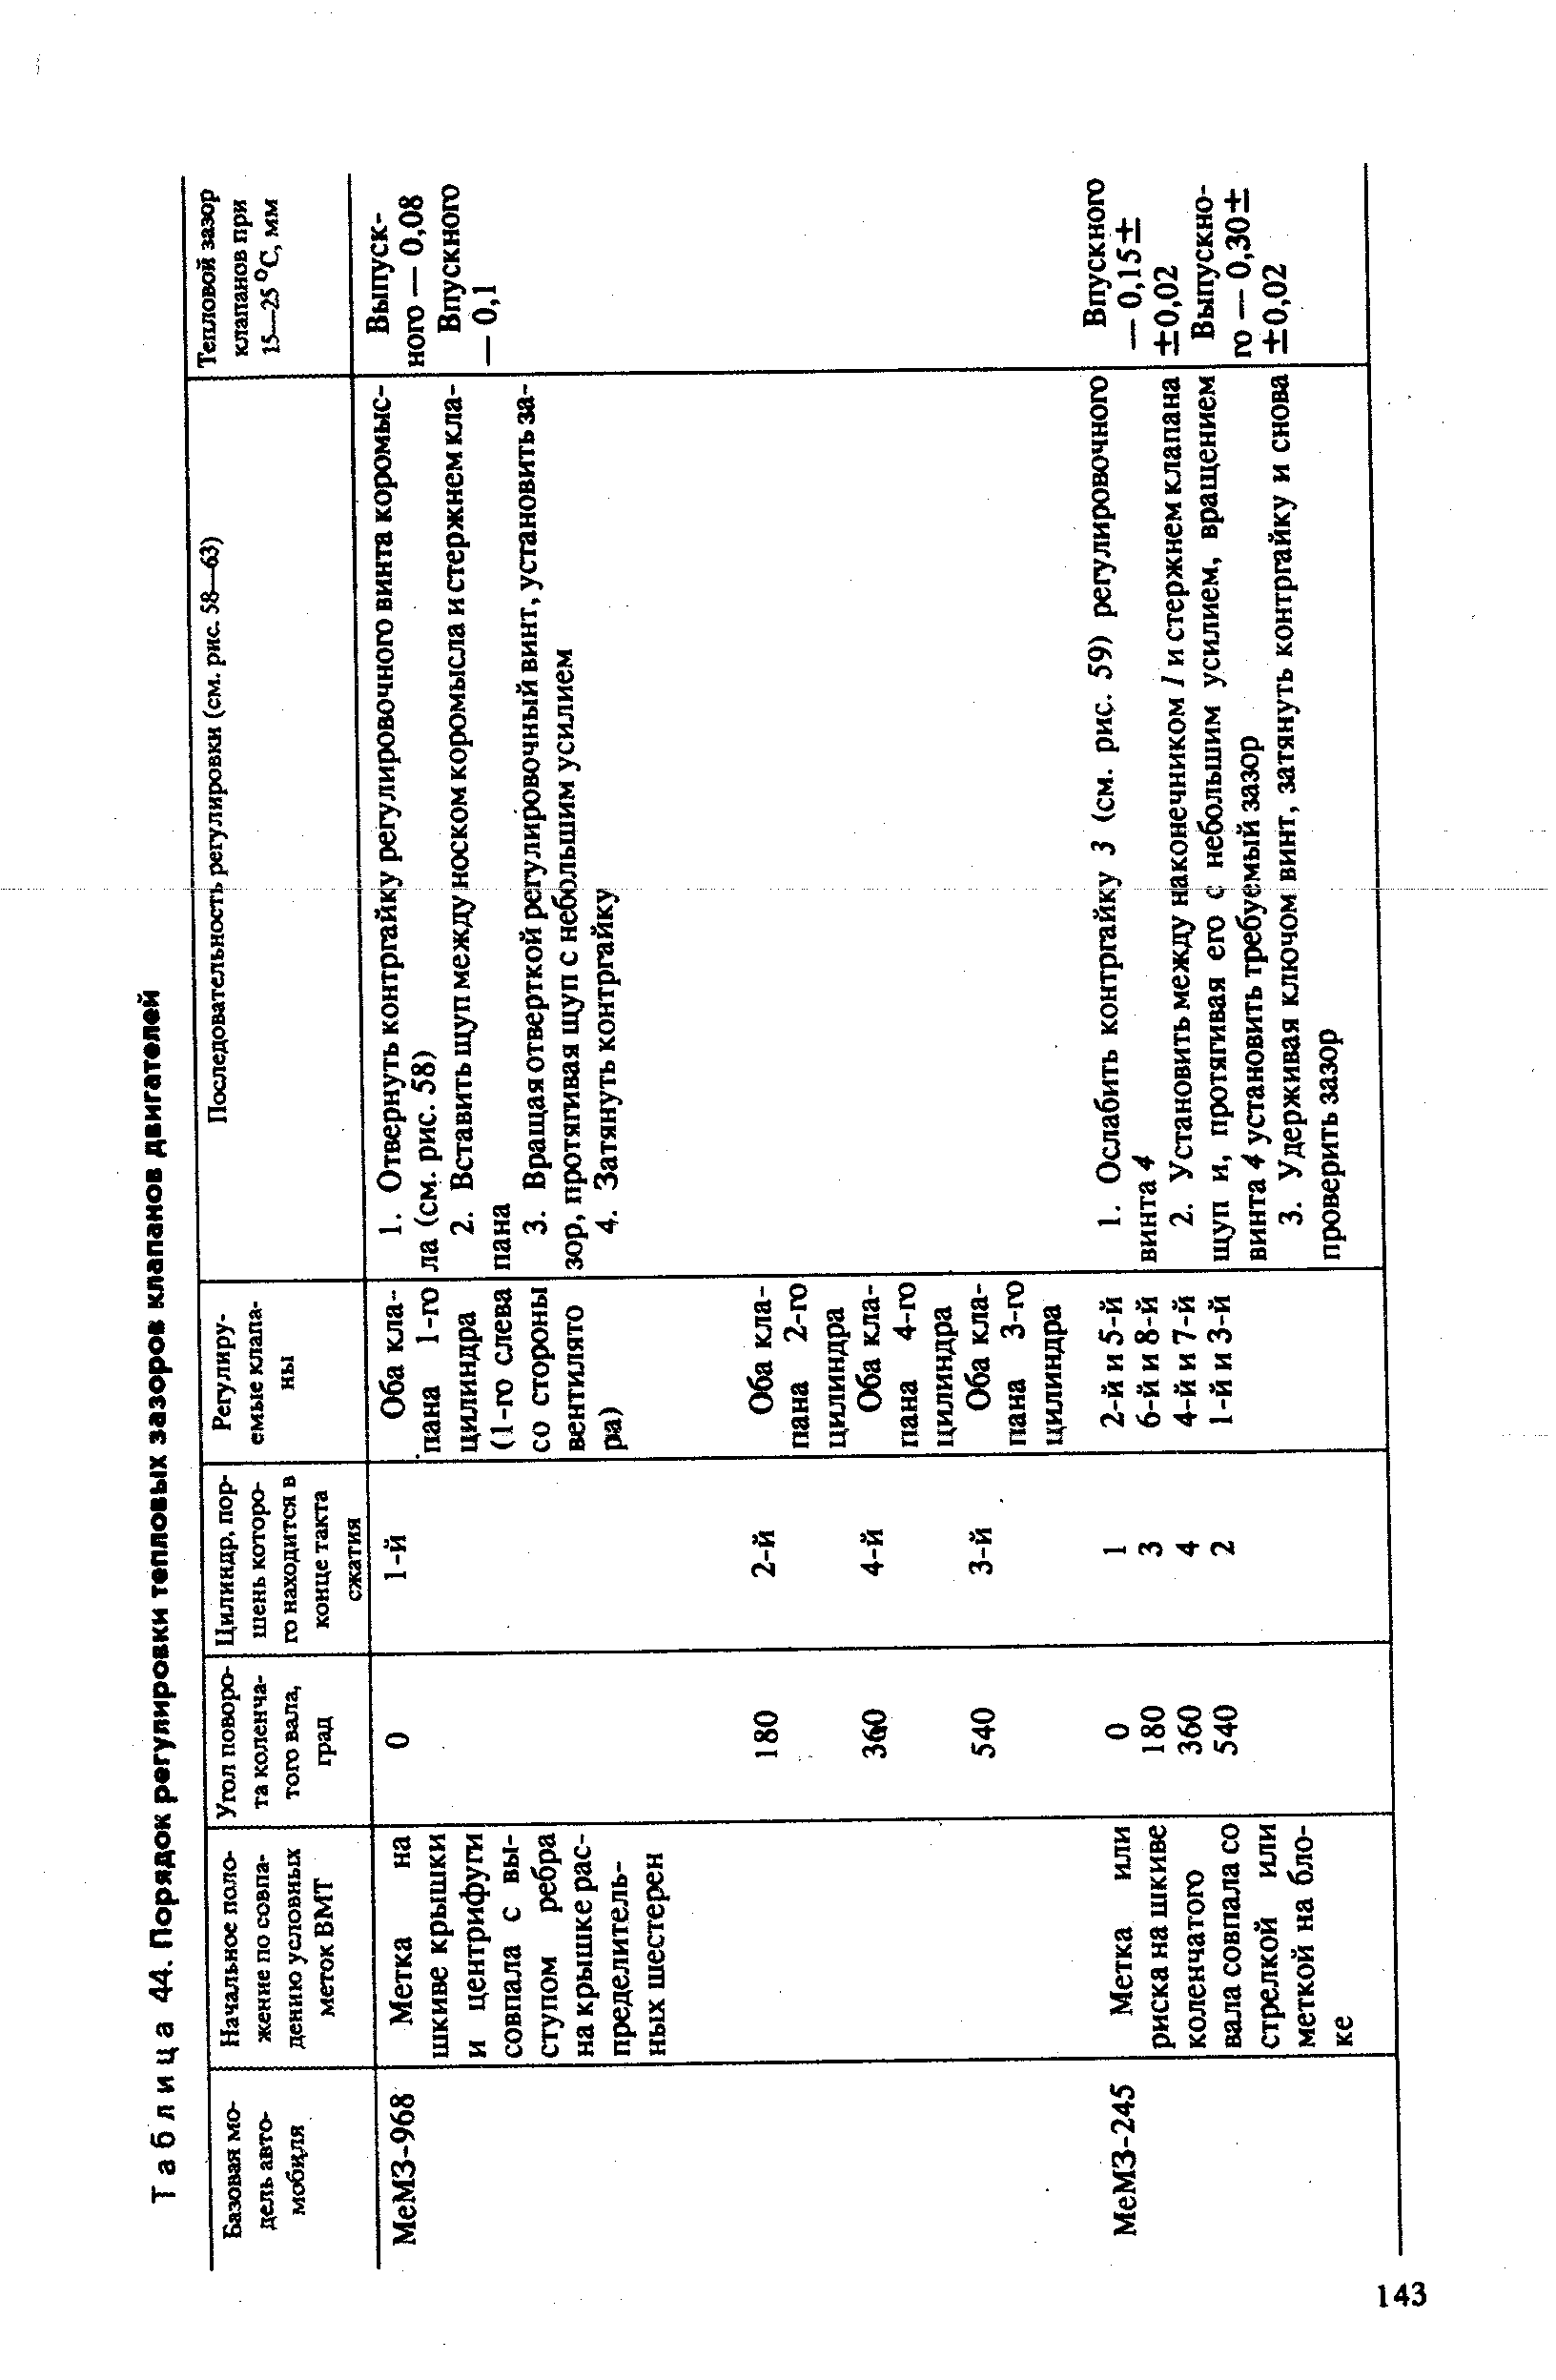 Таблица 44. Порядок регулировки тепловых зазоров клапанов двигателей
